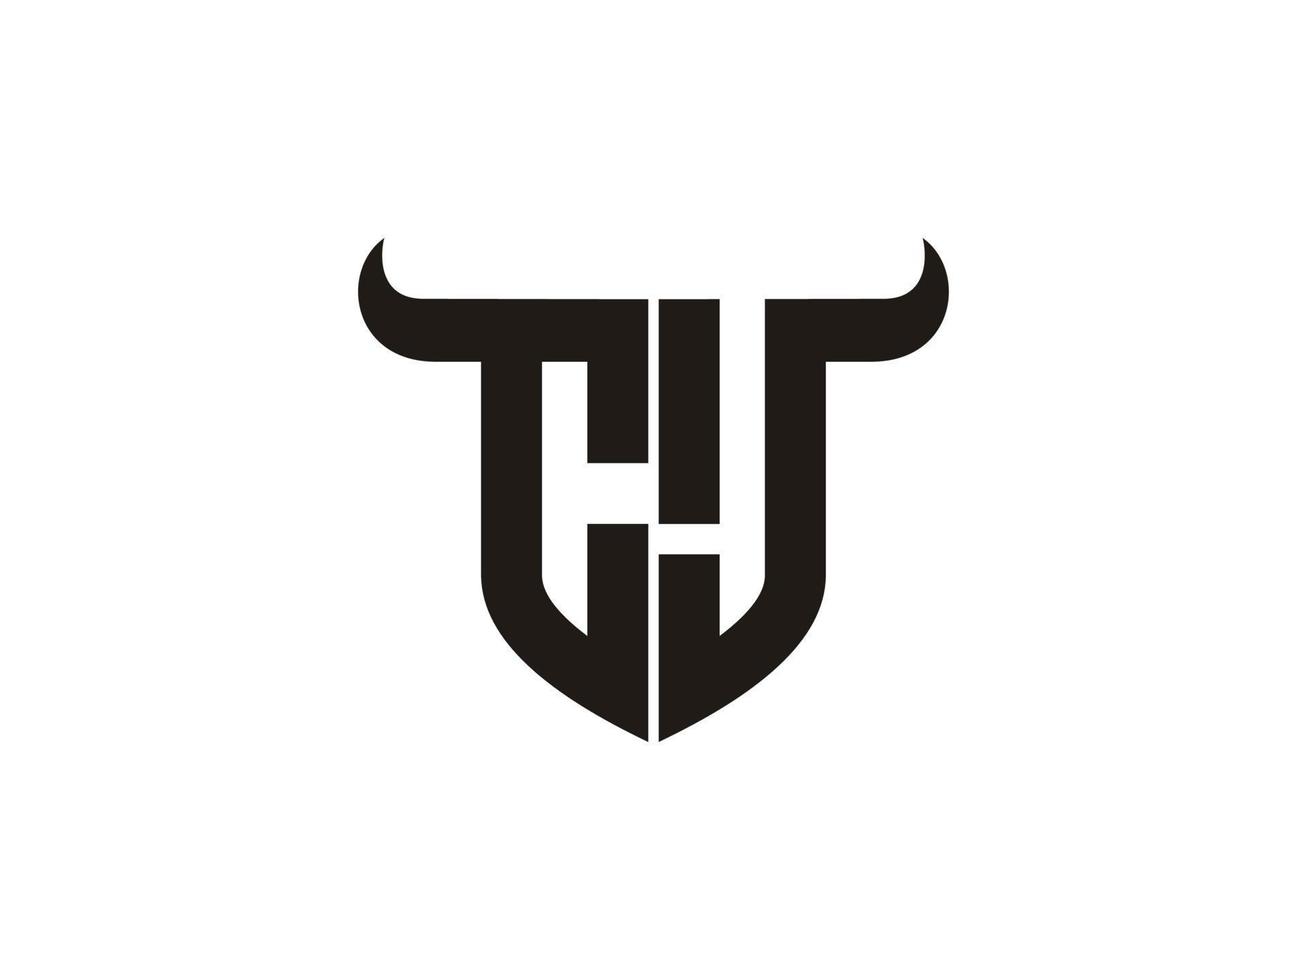 création initiale du logo cj bull. vecteur